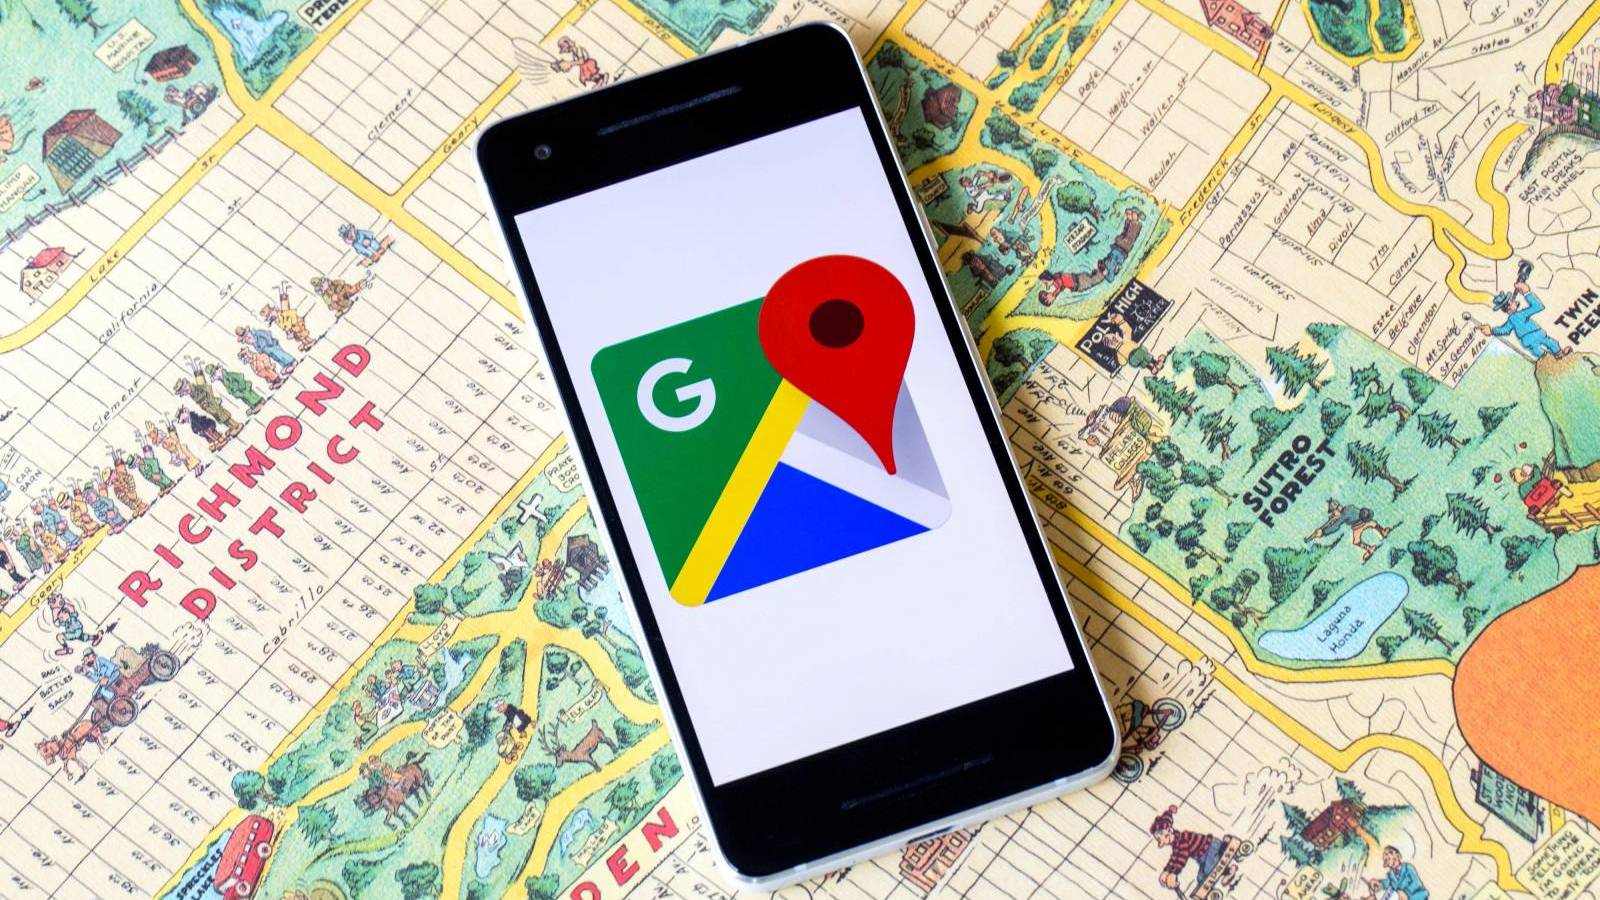 Actualizarea pentru Google Maps care aduce Noutati in Telefoane, Tablete